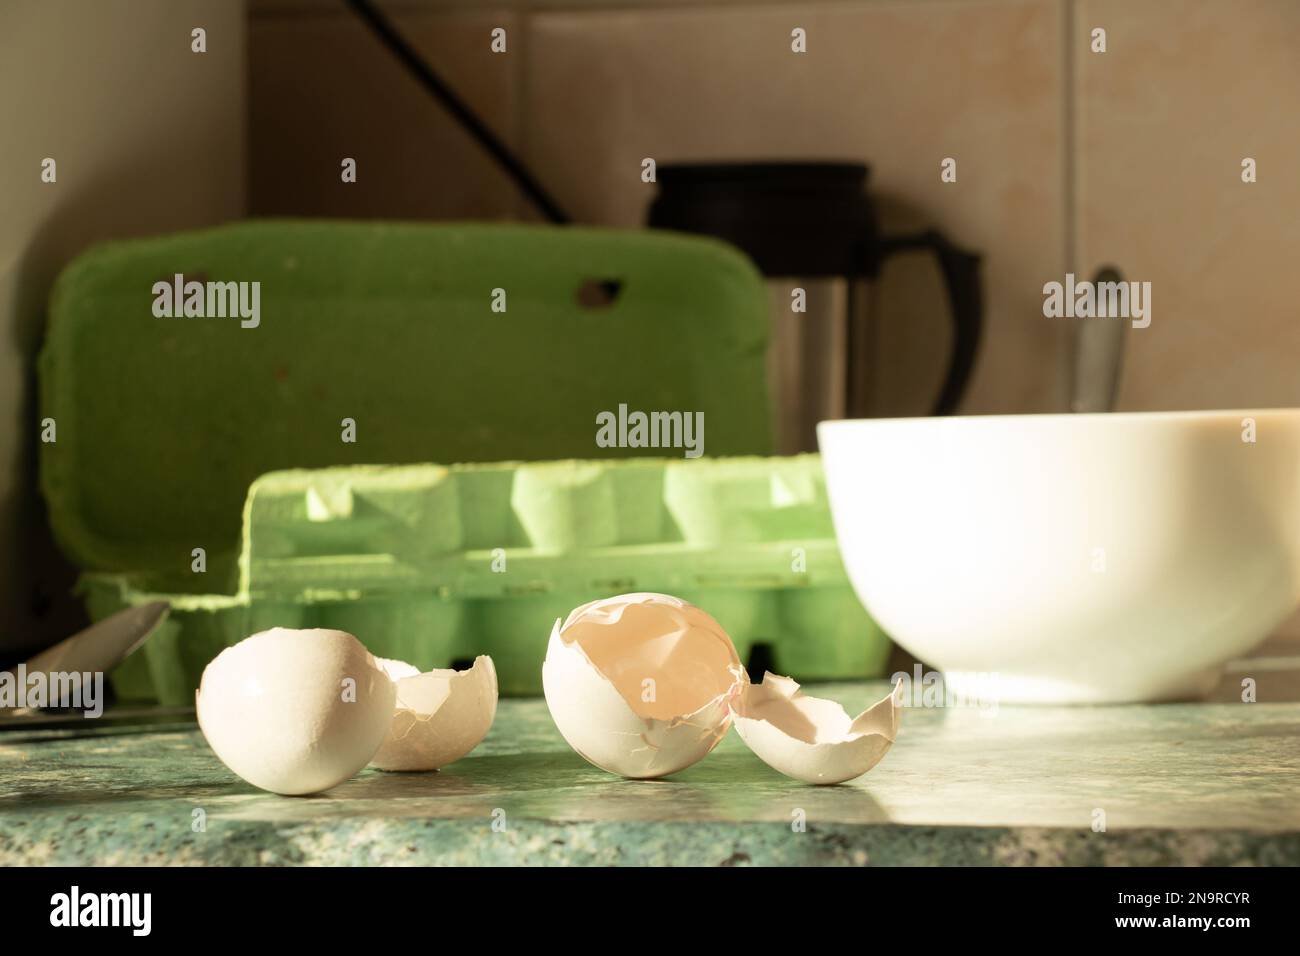 Une coquille d'œuf cassée se trouve sur la table de cuisine près de l'assiette, faire cuire une omelette, dîner Banque D'Images